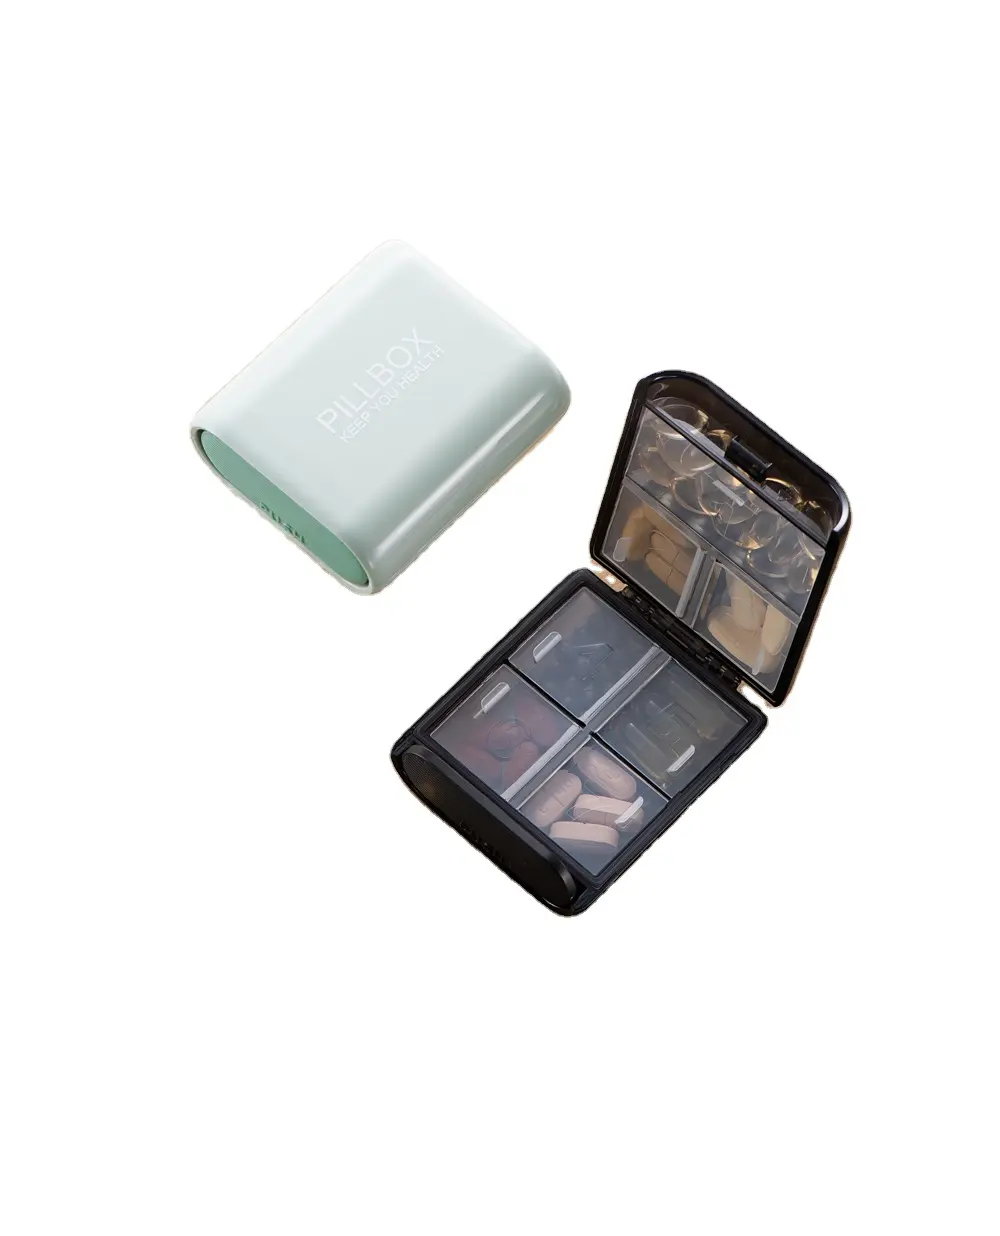 Pinmoo New Design Square Portable Plastic Pill Box Mini Pill Dispenser Box Case Organizer